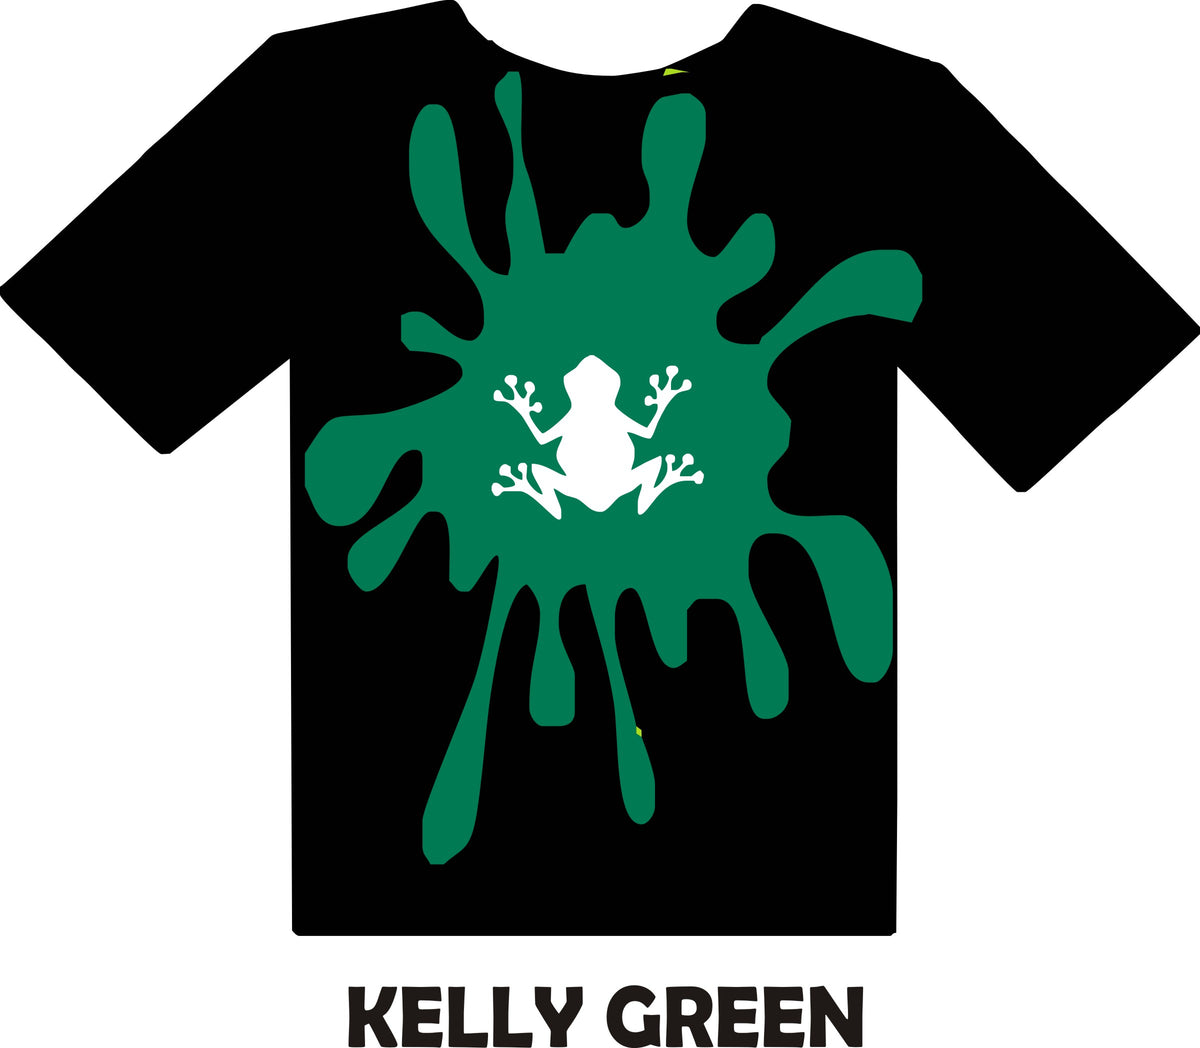 Cricut Permanent Vinyl - Kelly Green, 12 x 15 ft, Roll